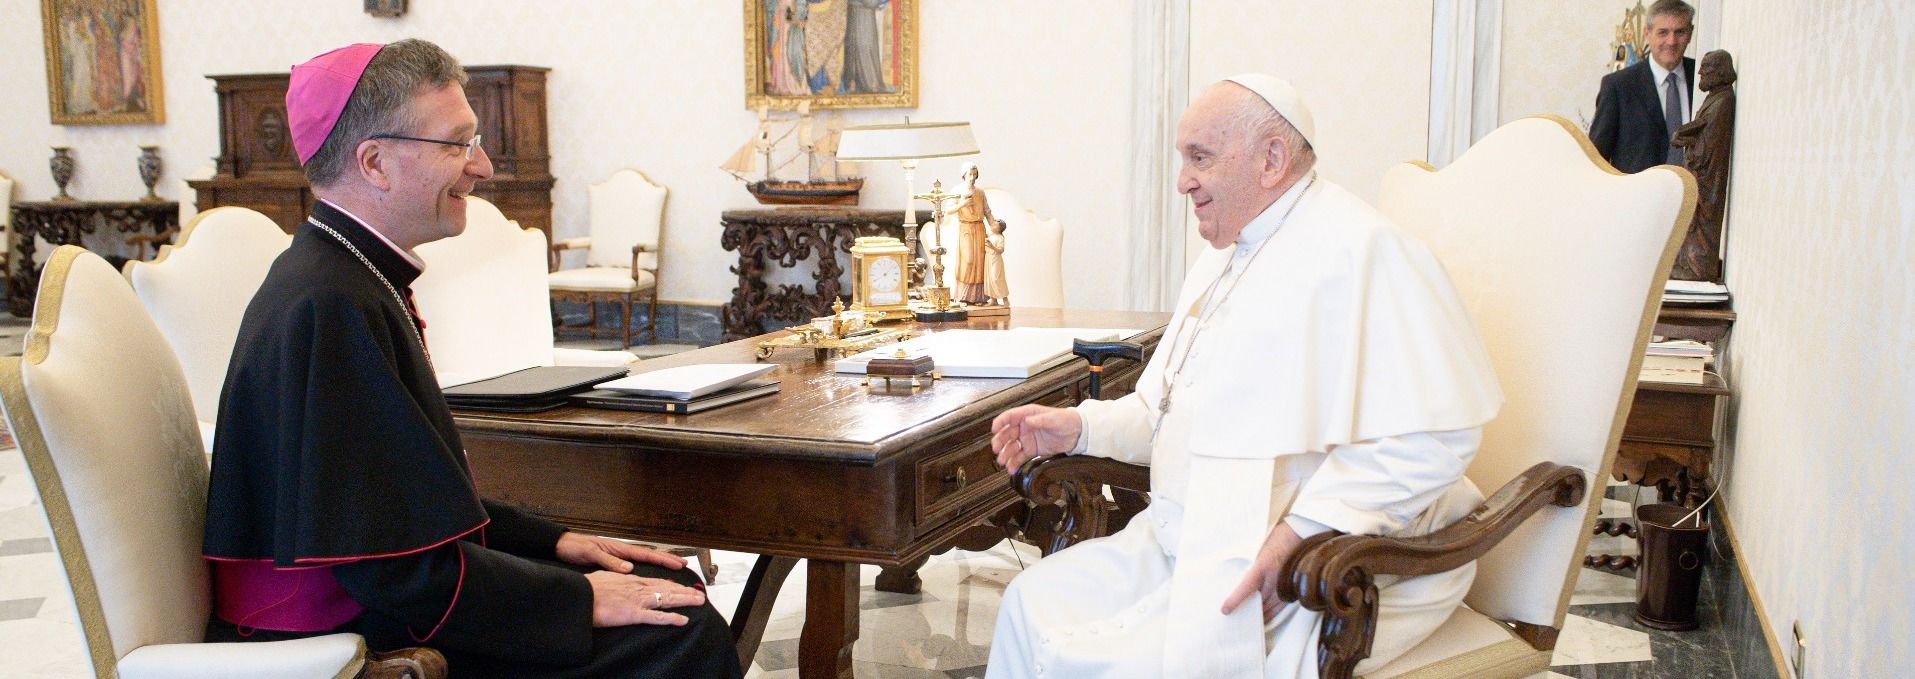 Im Dialog: Bischof Gerber bei Papst Franziskus / Foto: Vatican Media 